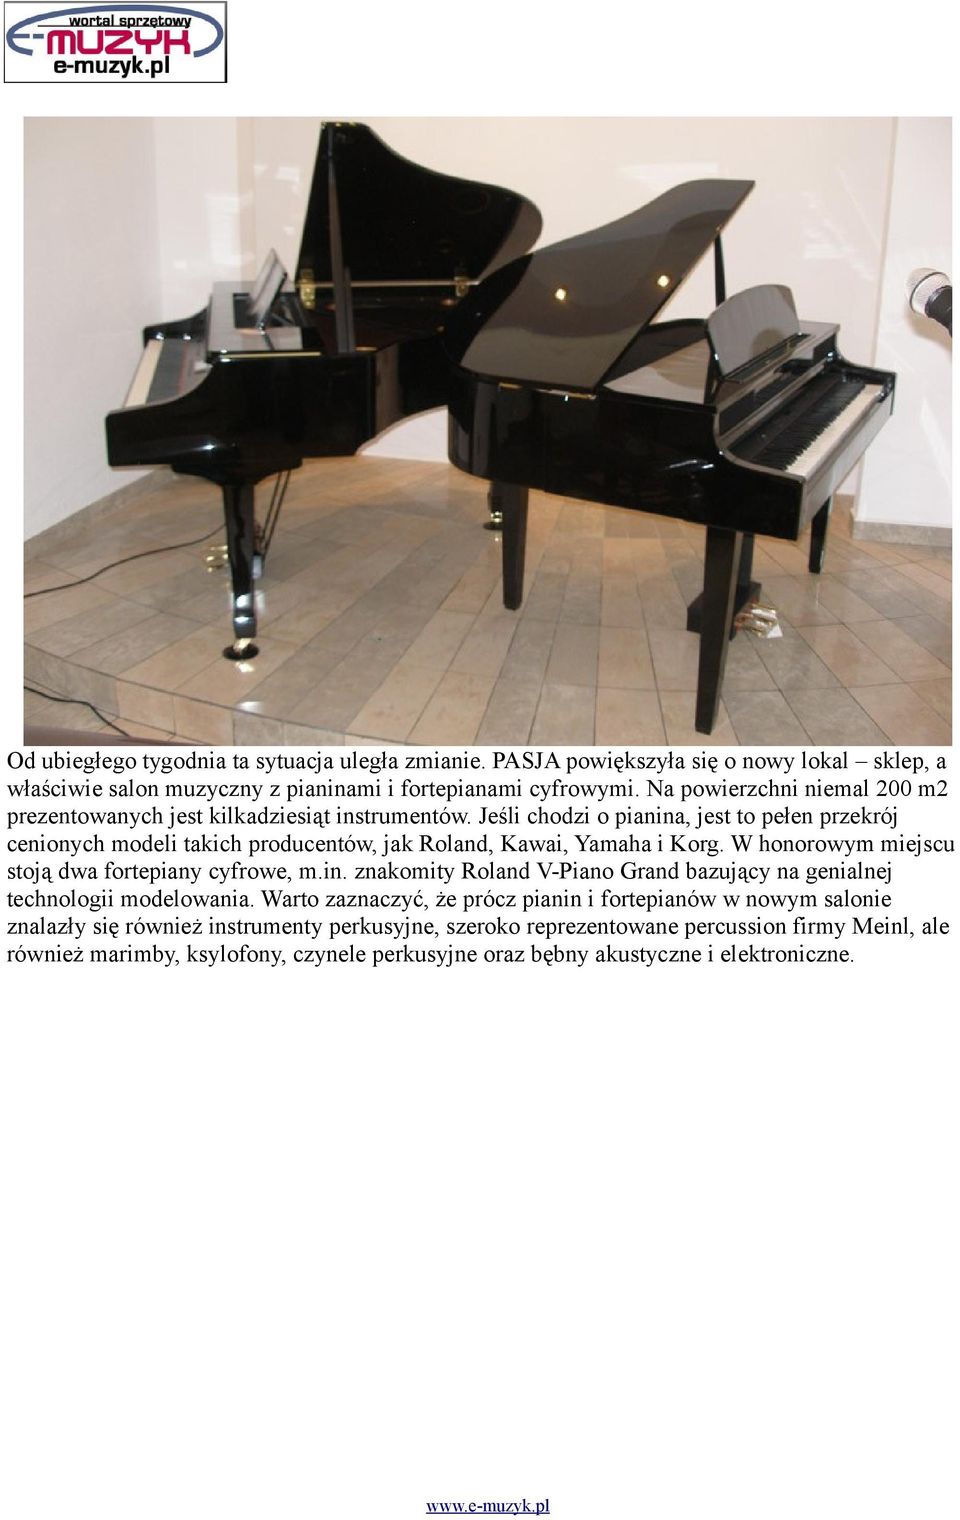 Jeśli chodzi o pianina, jest to pełen przekrój cenionych modeli takich producentów, jak Roland, Kawai, Yamaha i Korg. W honorowym miejscu stoją dwa fortepiany cyfrowe, m.in. znakomity Roland V-Piano Grand bazujący na genialnej technologii modelowania.